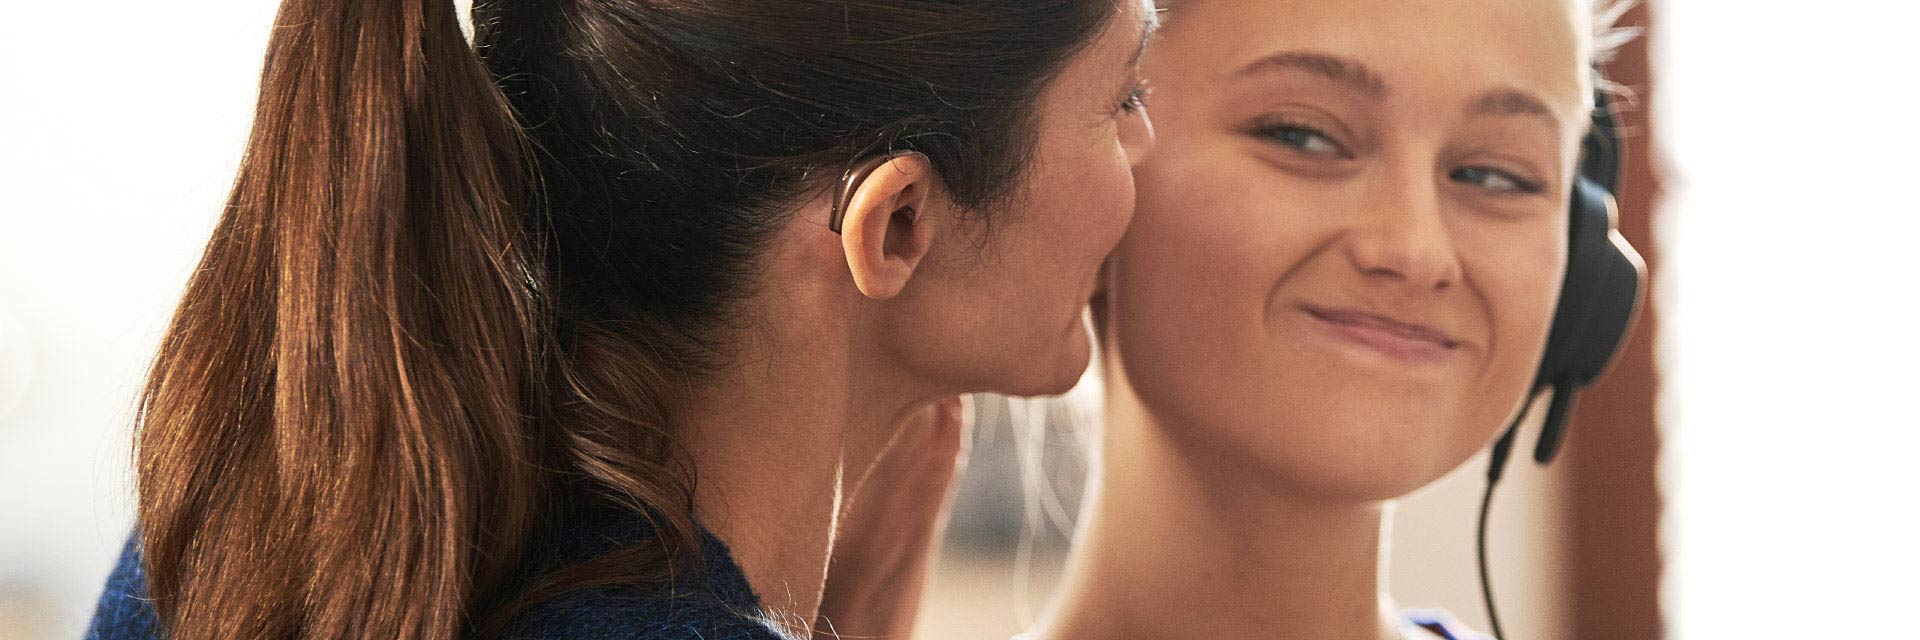 La imagen muestra una mujer con un audífono en su oído y a una chica, sonriéndose 